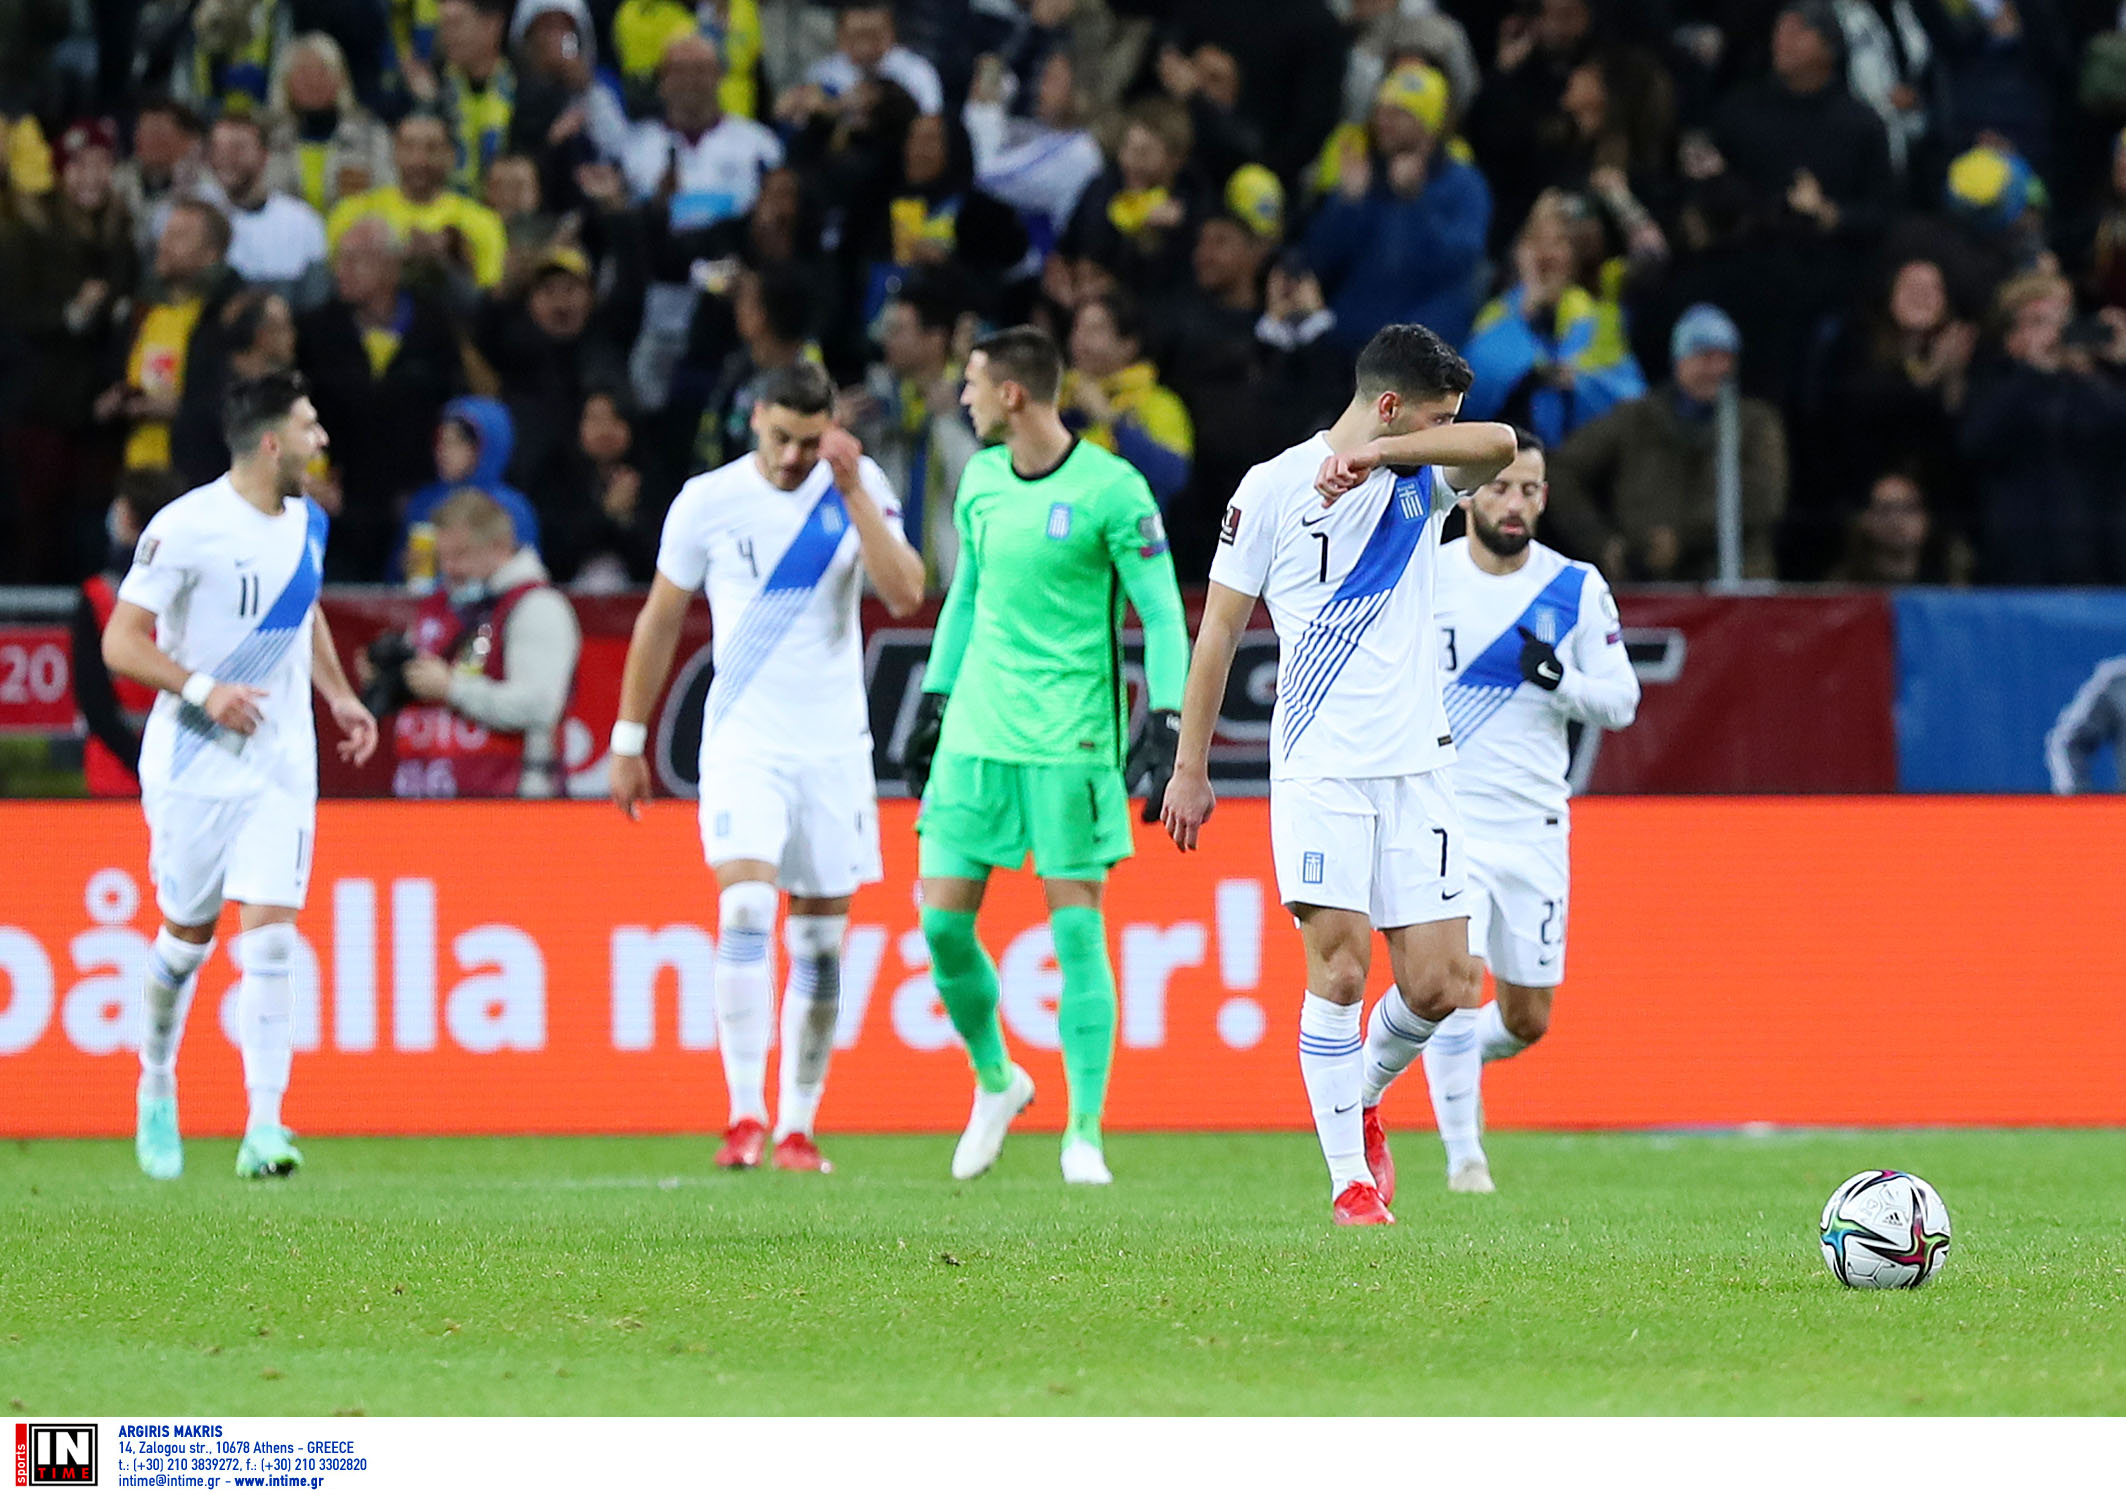 Προκριματικά Μουντιάλ 2022, Σουηδία – Ελλάδα 2-0: Δυο τραγικά λάθη έφεραν την ήττα στην Στοκχόλμη